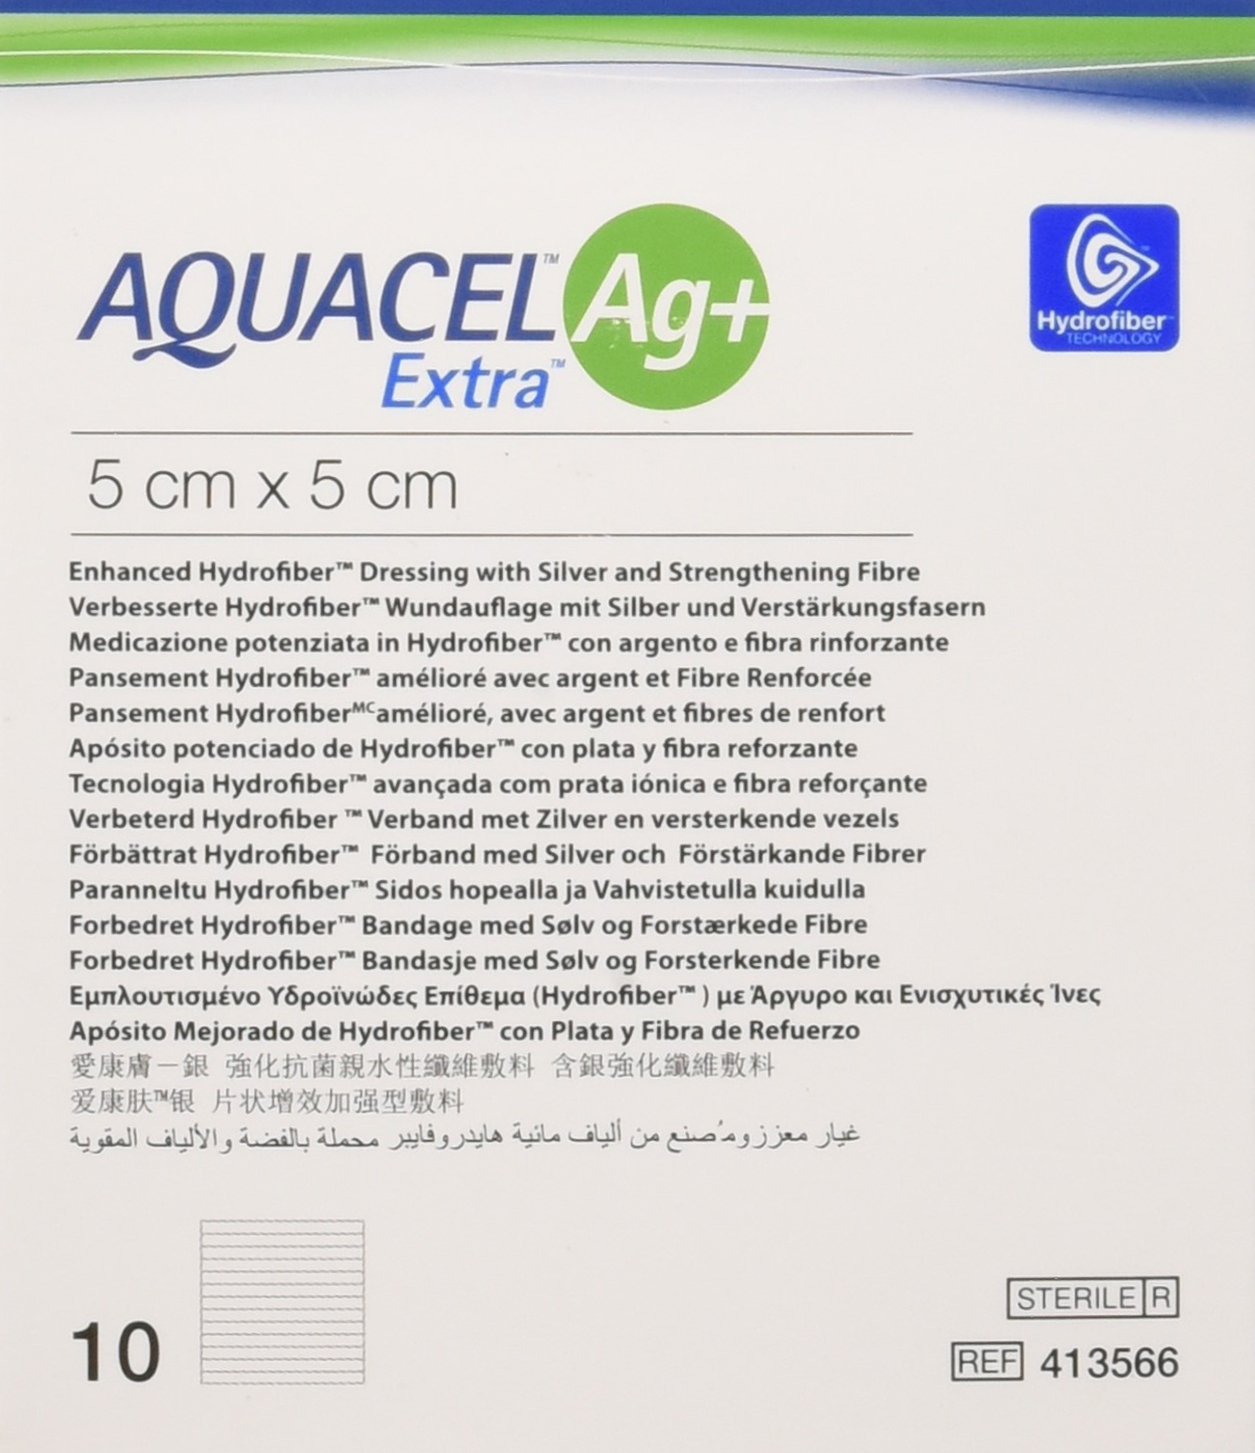 AQUACEL Ag + Extra Quadratische Wundauflagen, 5 x 5 cm